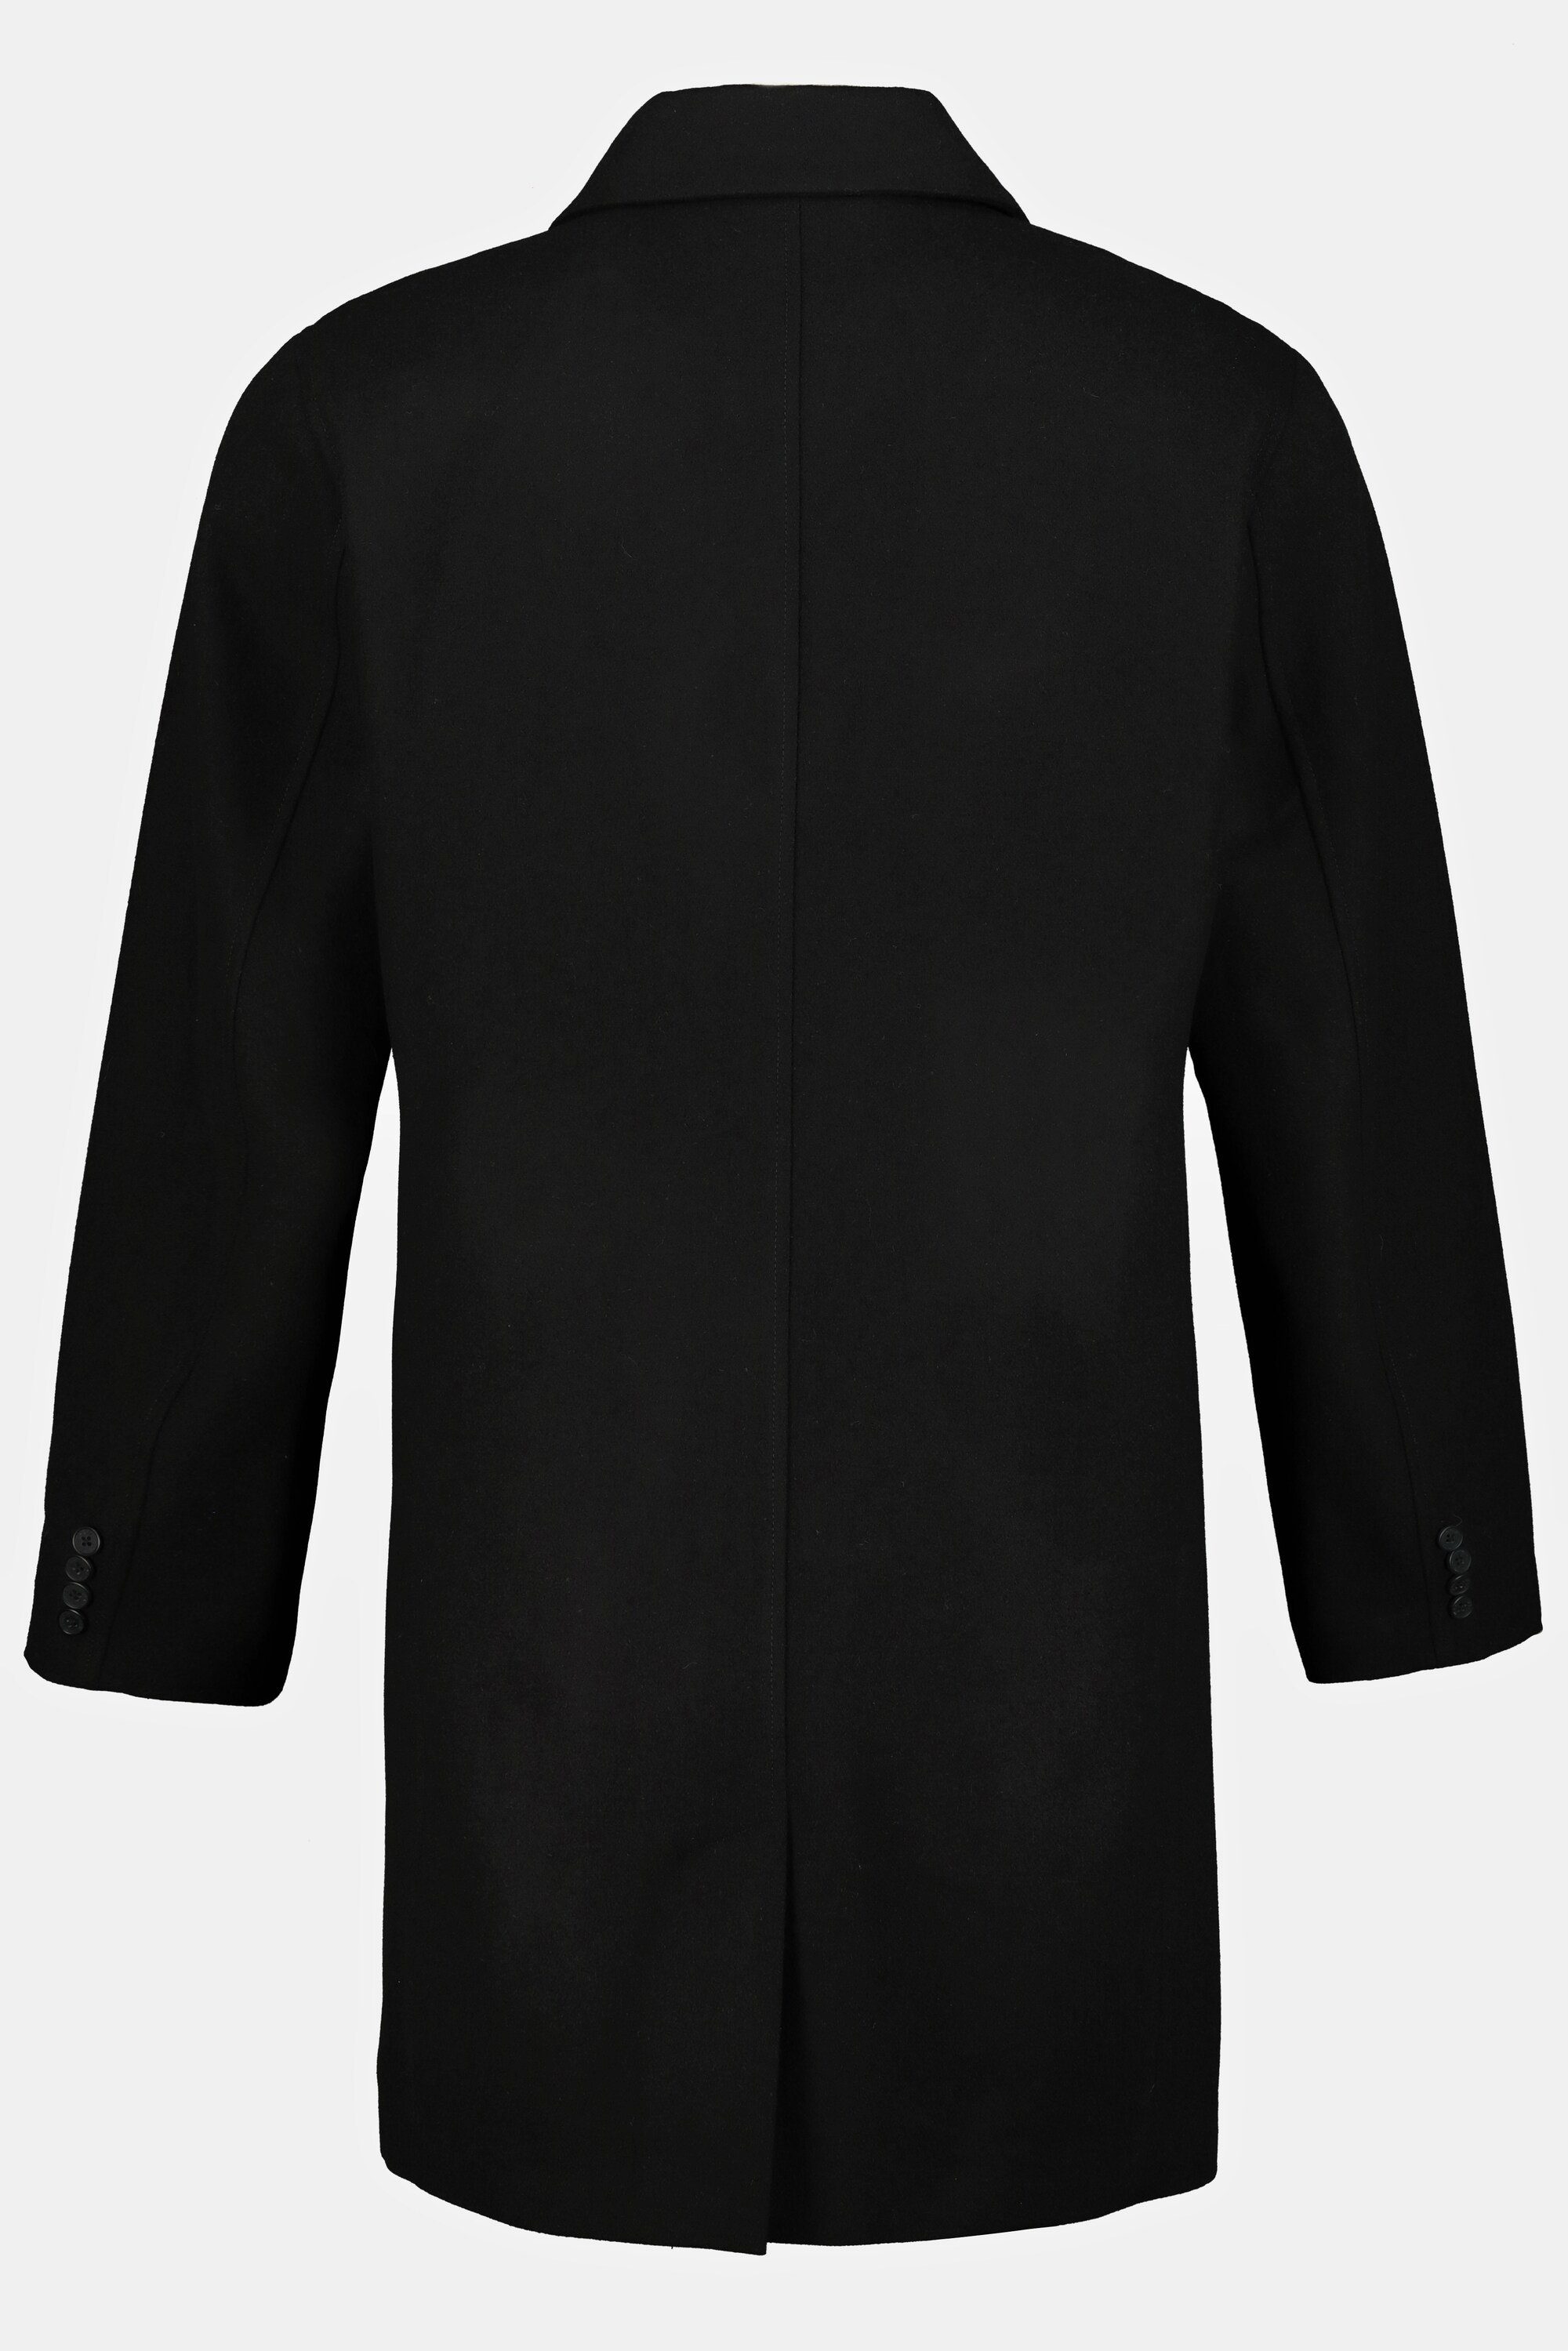 Kurzmantel Mantel Hemdkragen 8 schwarz wasserabweisend XL Wollmix JP1880 bis